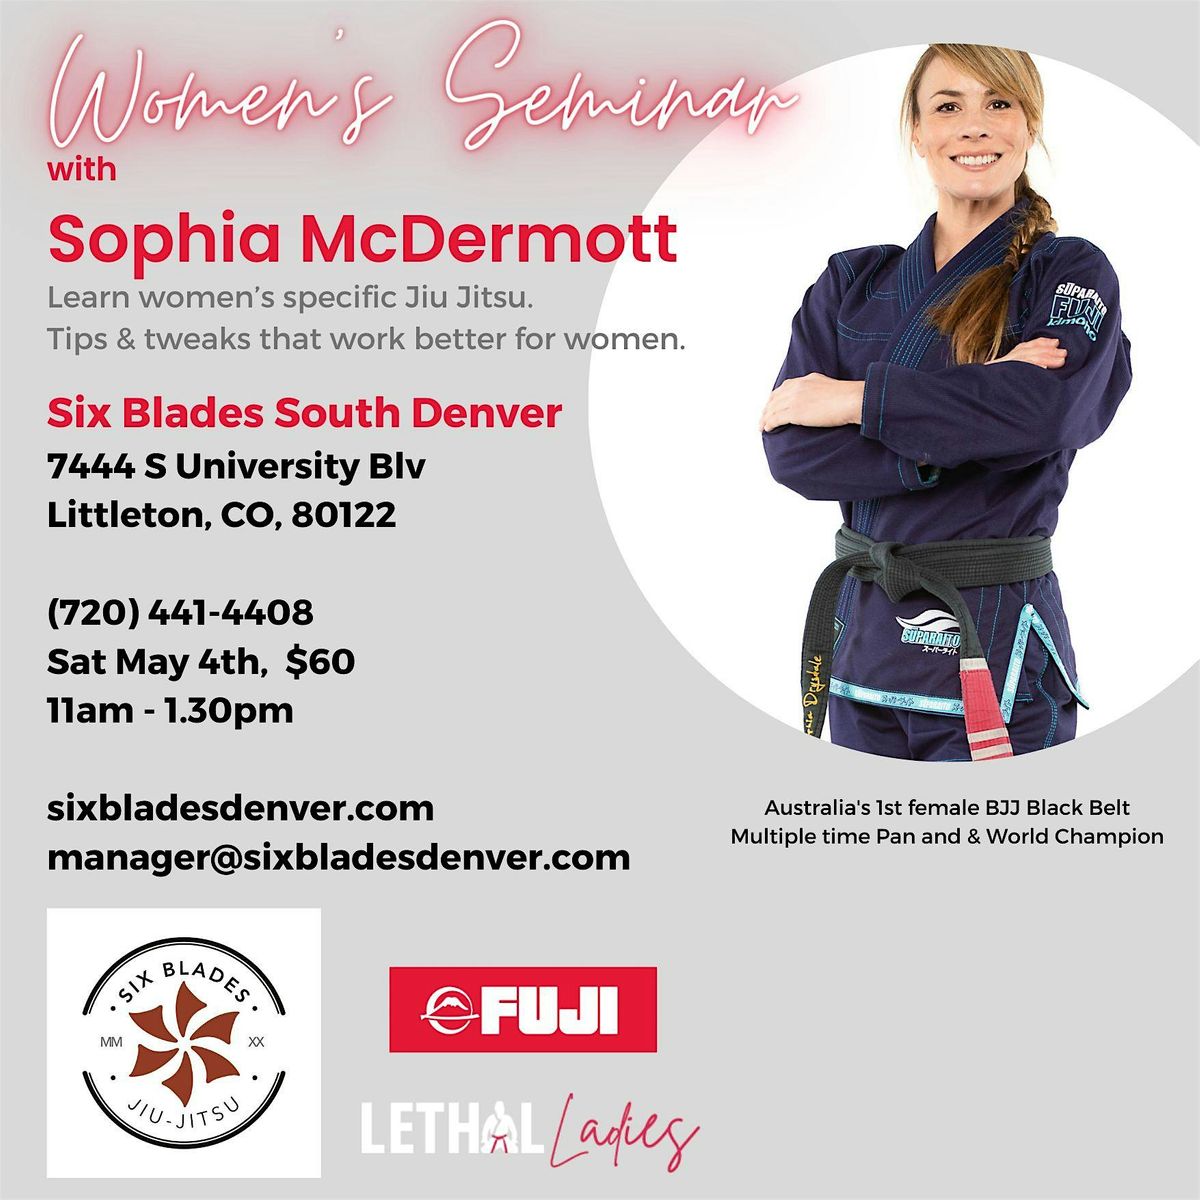 Sophia McDermott - Women Only Seminar